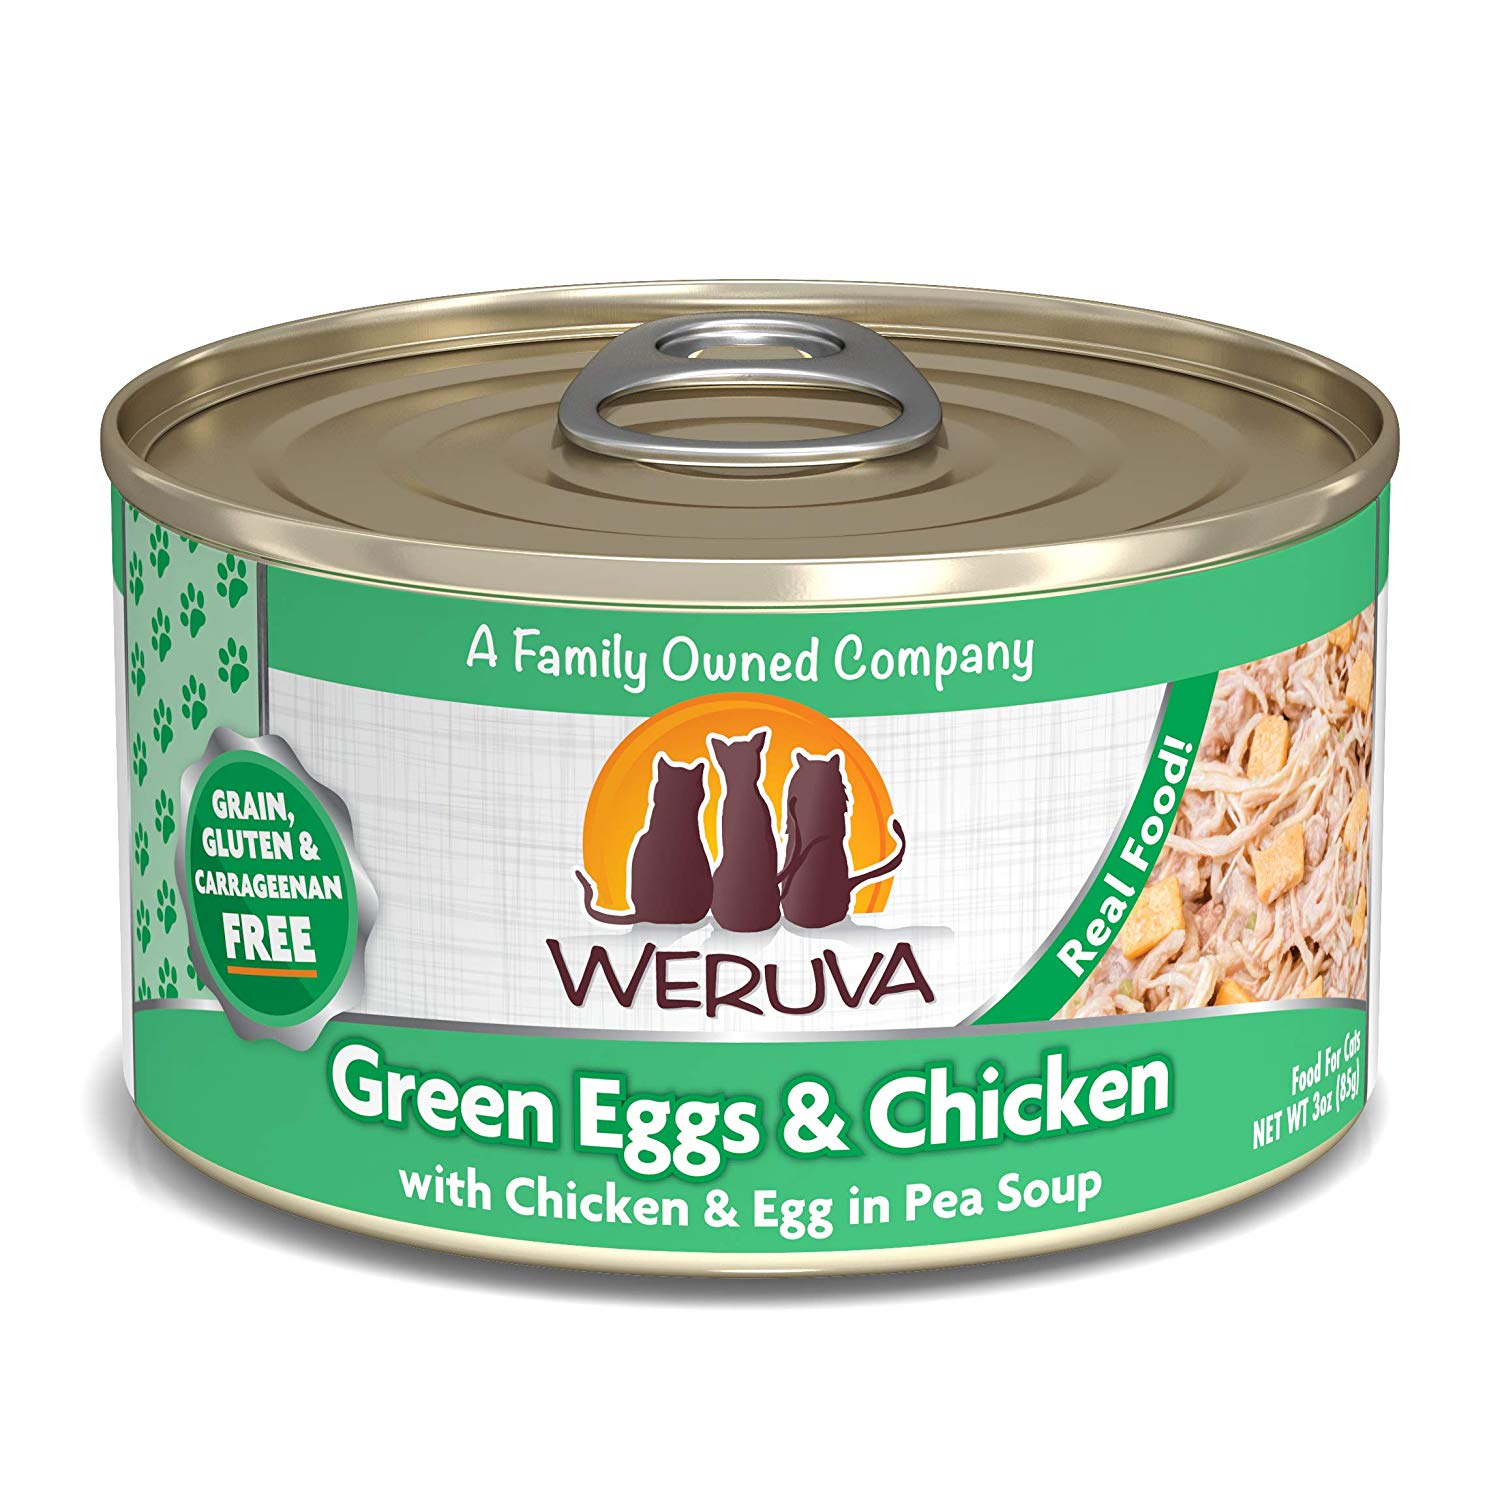 唯美味主食貓罐-翡翠雞絲蛋
WERUVA-Green Eggs and Chicken With Chicken, Egg and Greens in Gravy